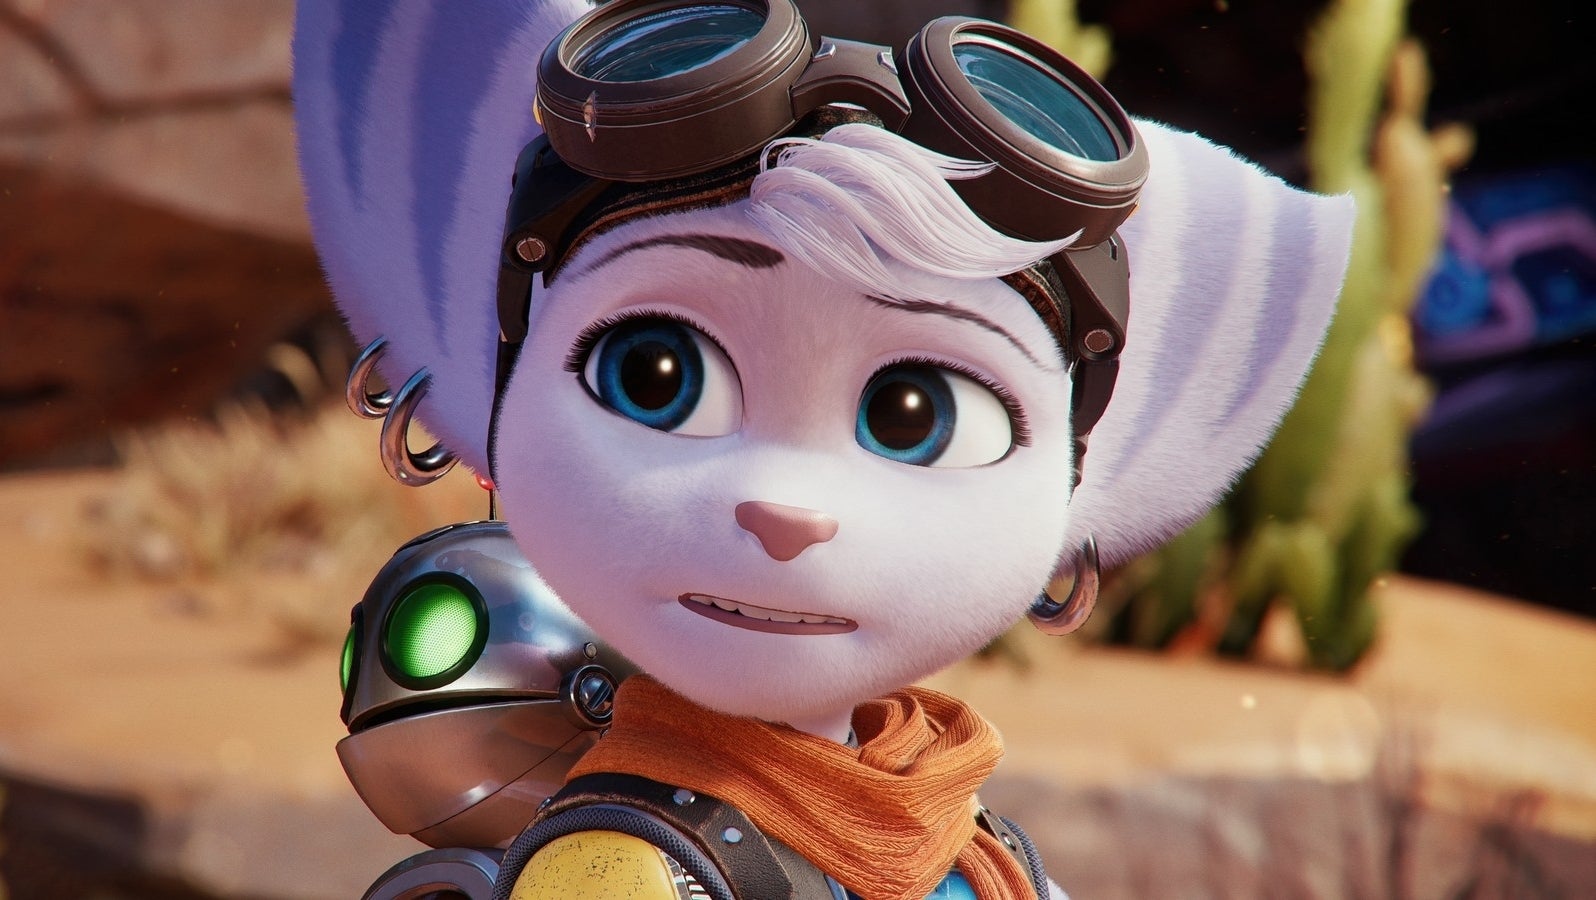 Bilder zu Ratchet and Clank: Rift Apart - Der spielbare Pixar-Film